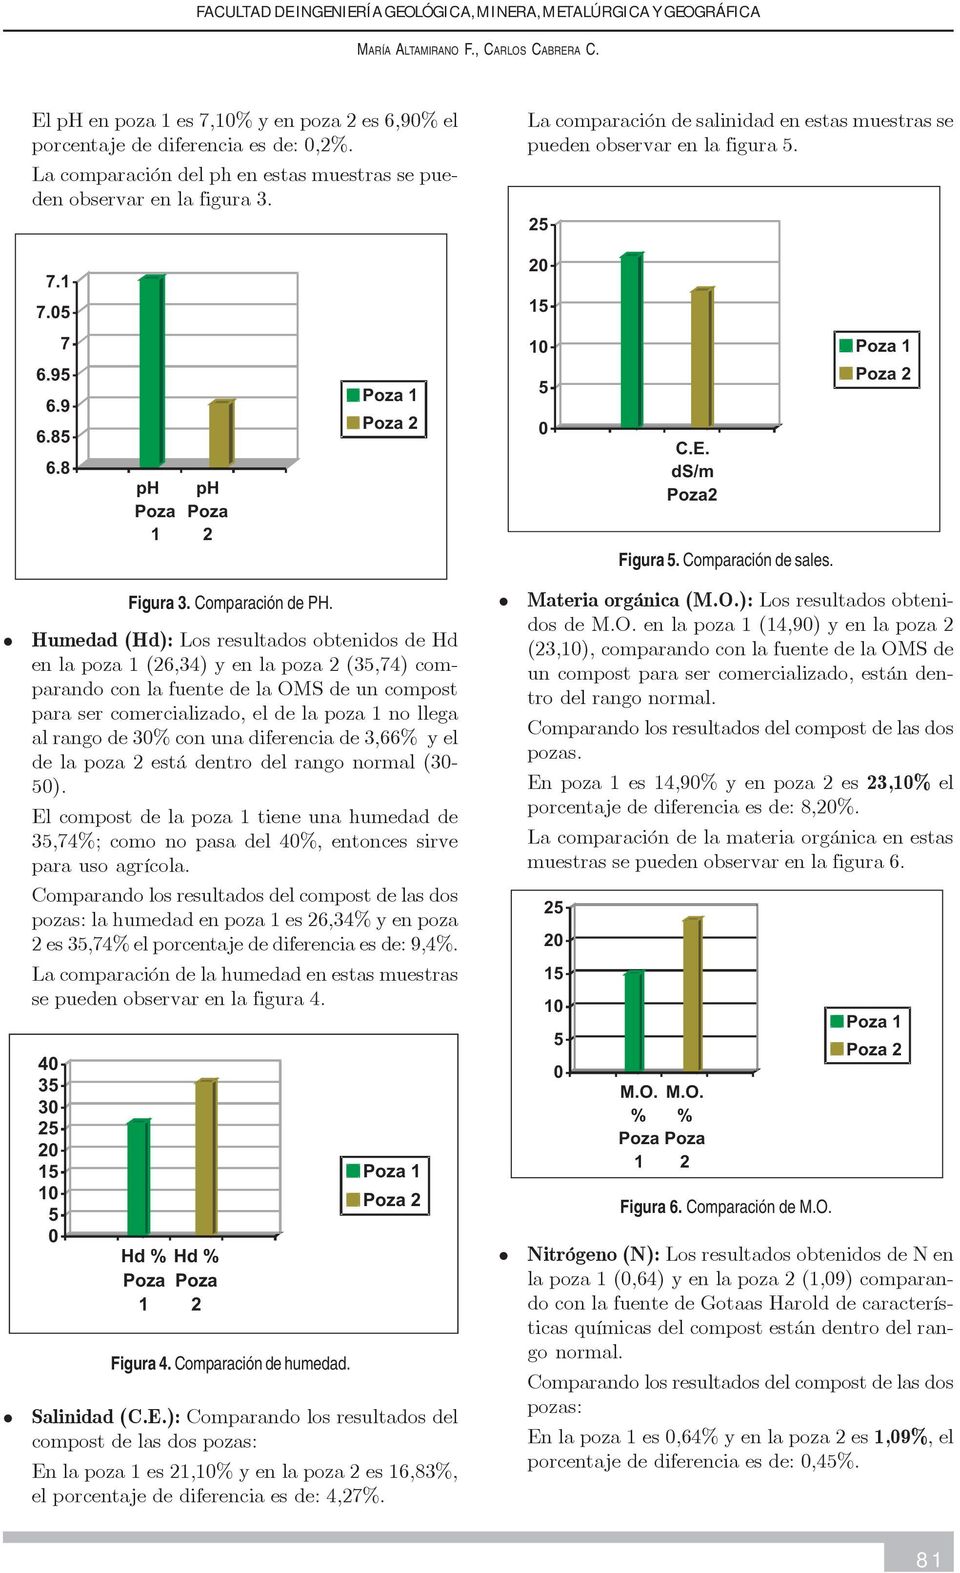 Humedad (Hd): Los resultados obtenidos de Hd en la poza (26,34) y en la poza 2 (35,74) comparando con la fuente de la OMS de un compost para ser comercializado, el de la poza no llega al rango de 3%